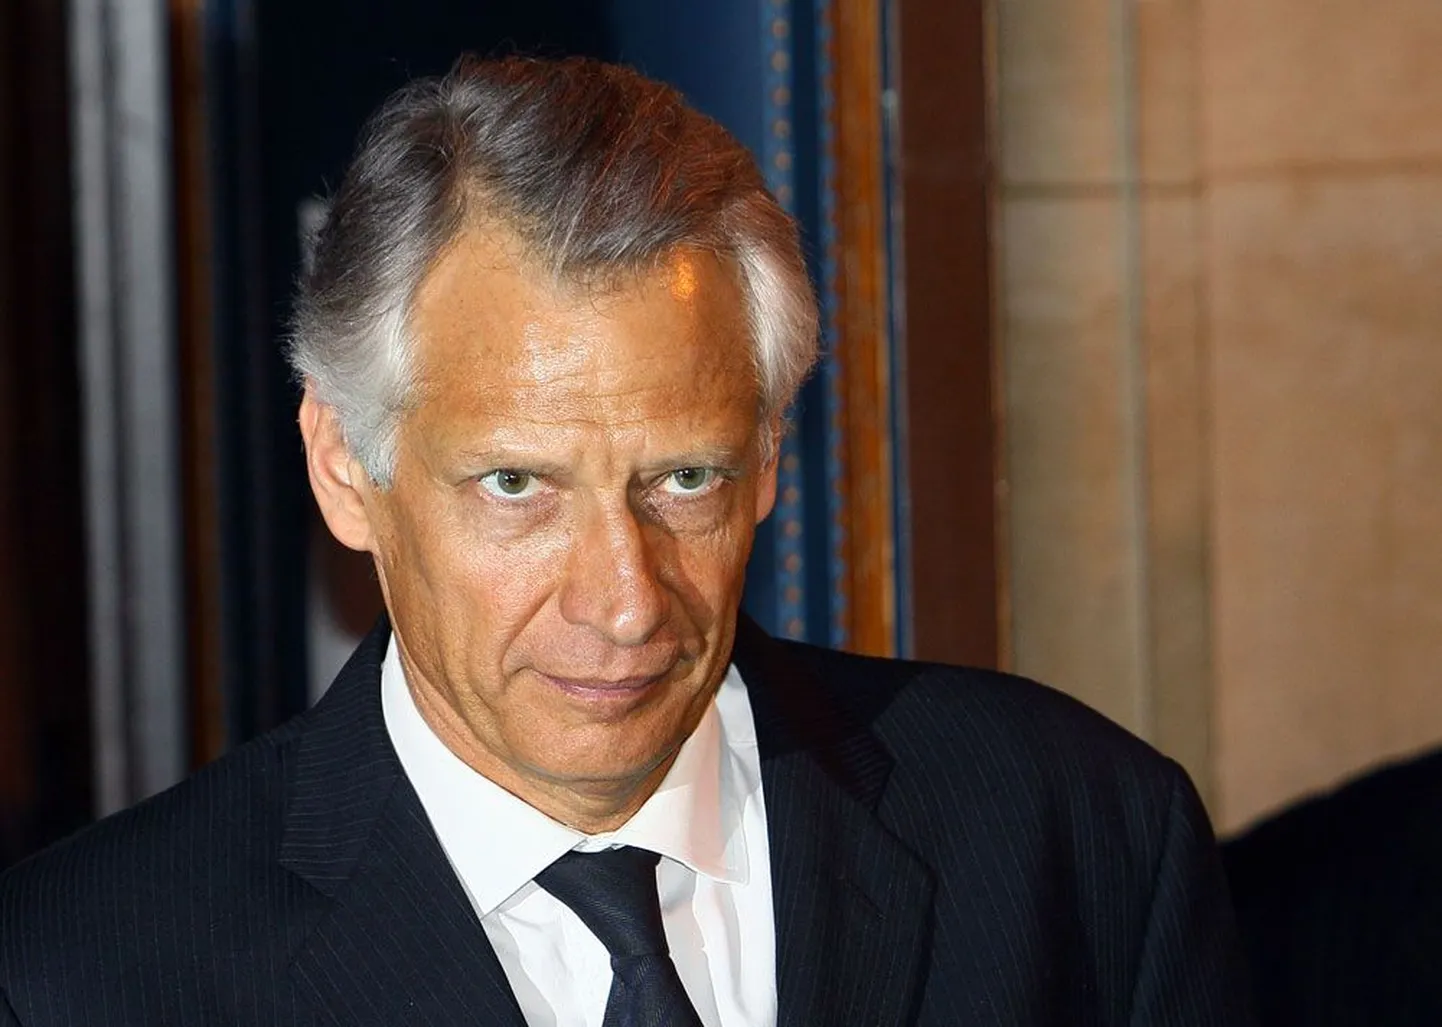 Villepin võib nüüd 2012. aastal Sarkozyga konkureerides presidendiks kandideerida.